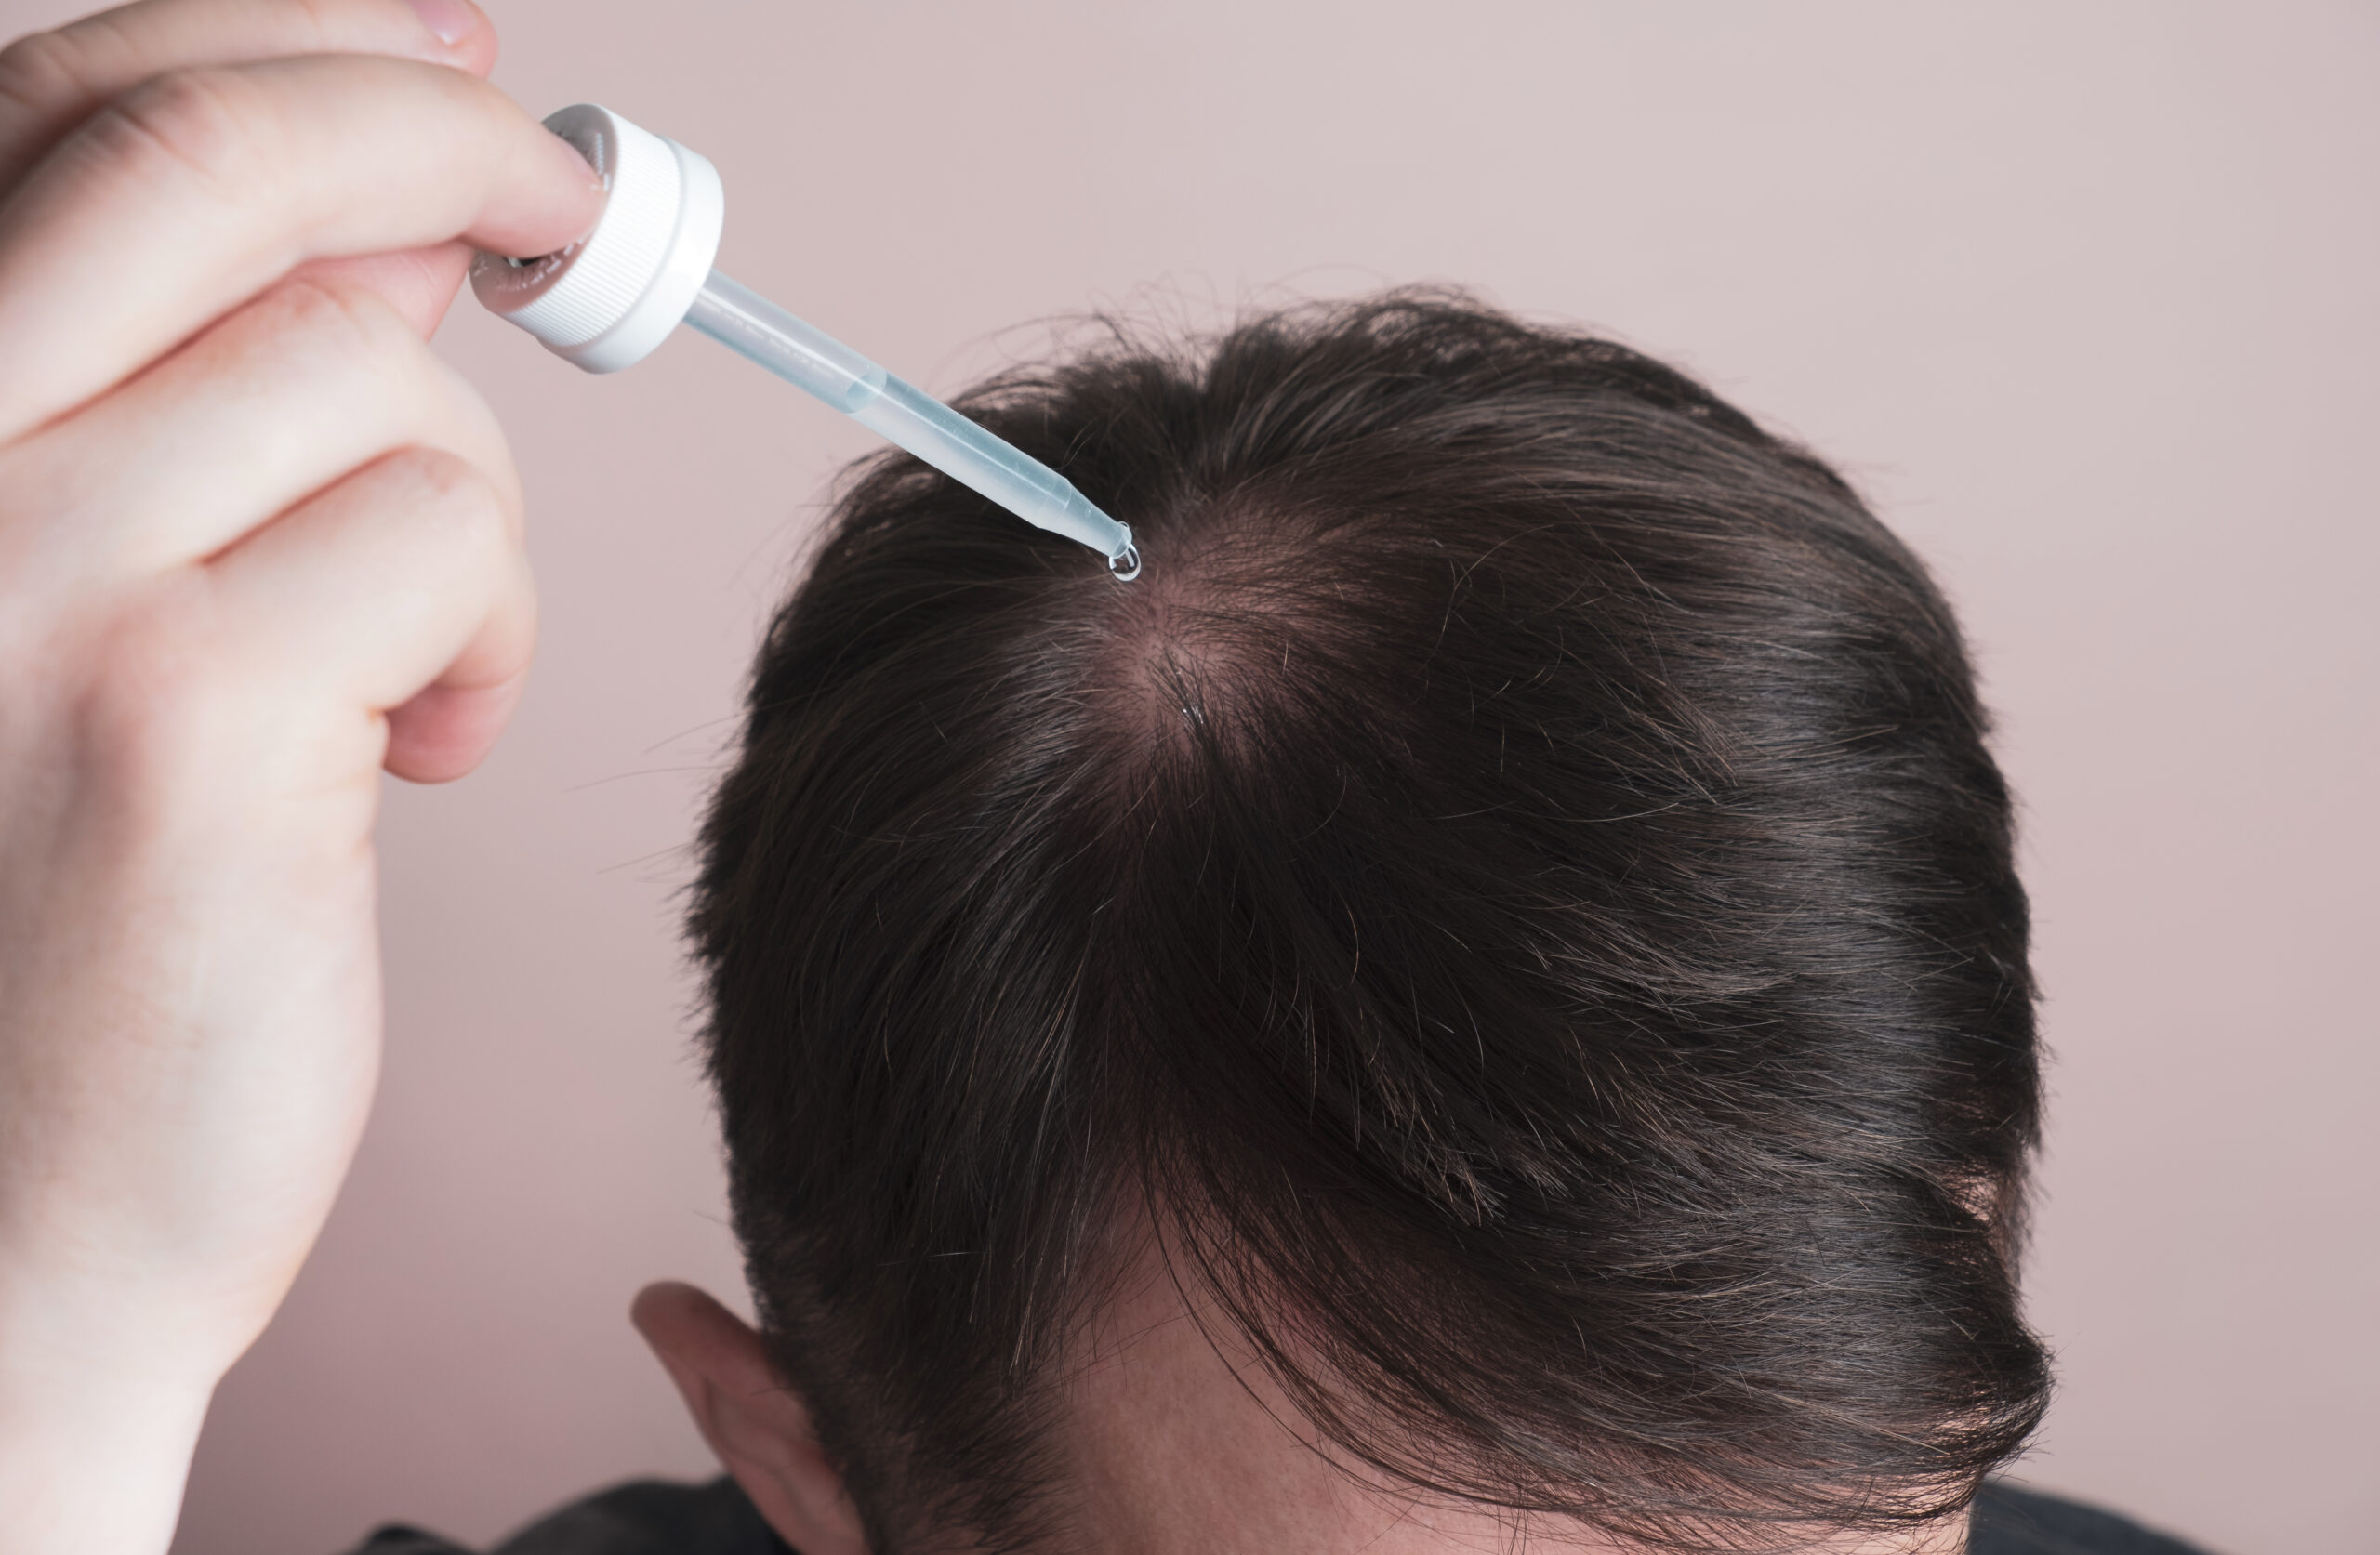 Mann wendet Minoxidil gegen Haarausfall an